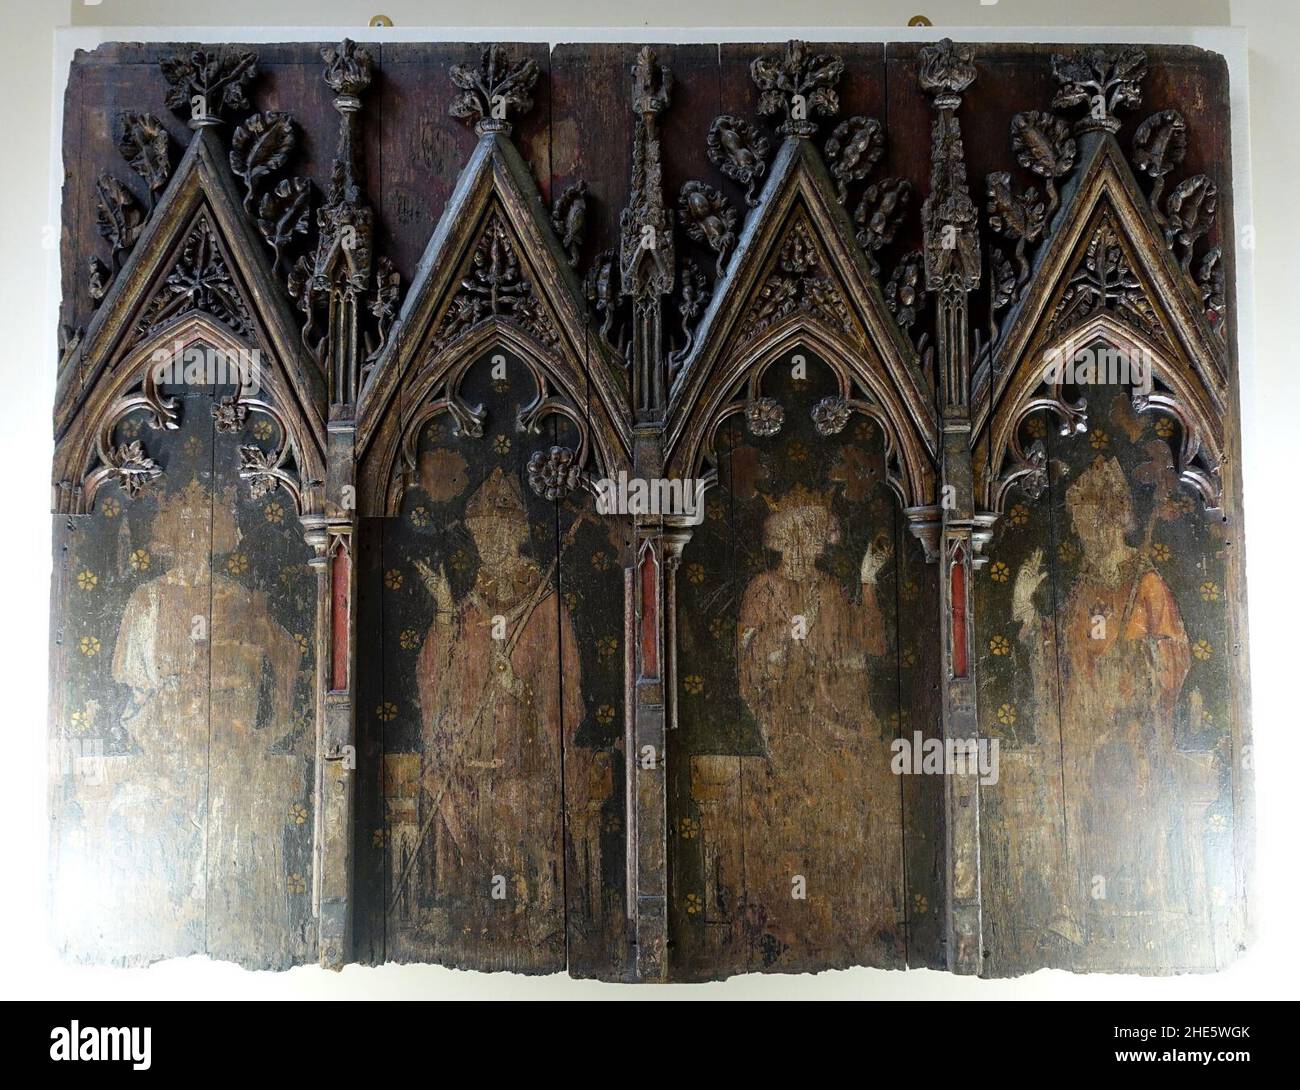 Saint Edmund, Thomas Beckett, Saint Edward il Confessore, e un vescovo Mitered, Inghilterra, 1300-1310, olio sul pannello - Kingston Lacy - Dorset, Inghilterra Foto Stock